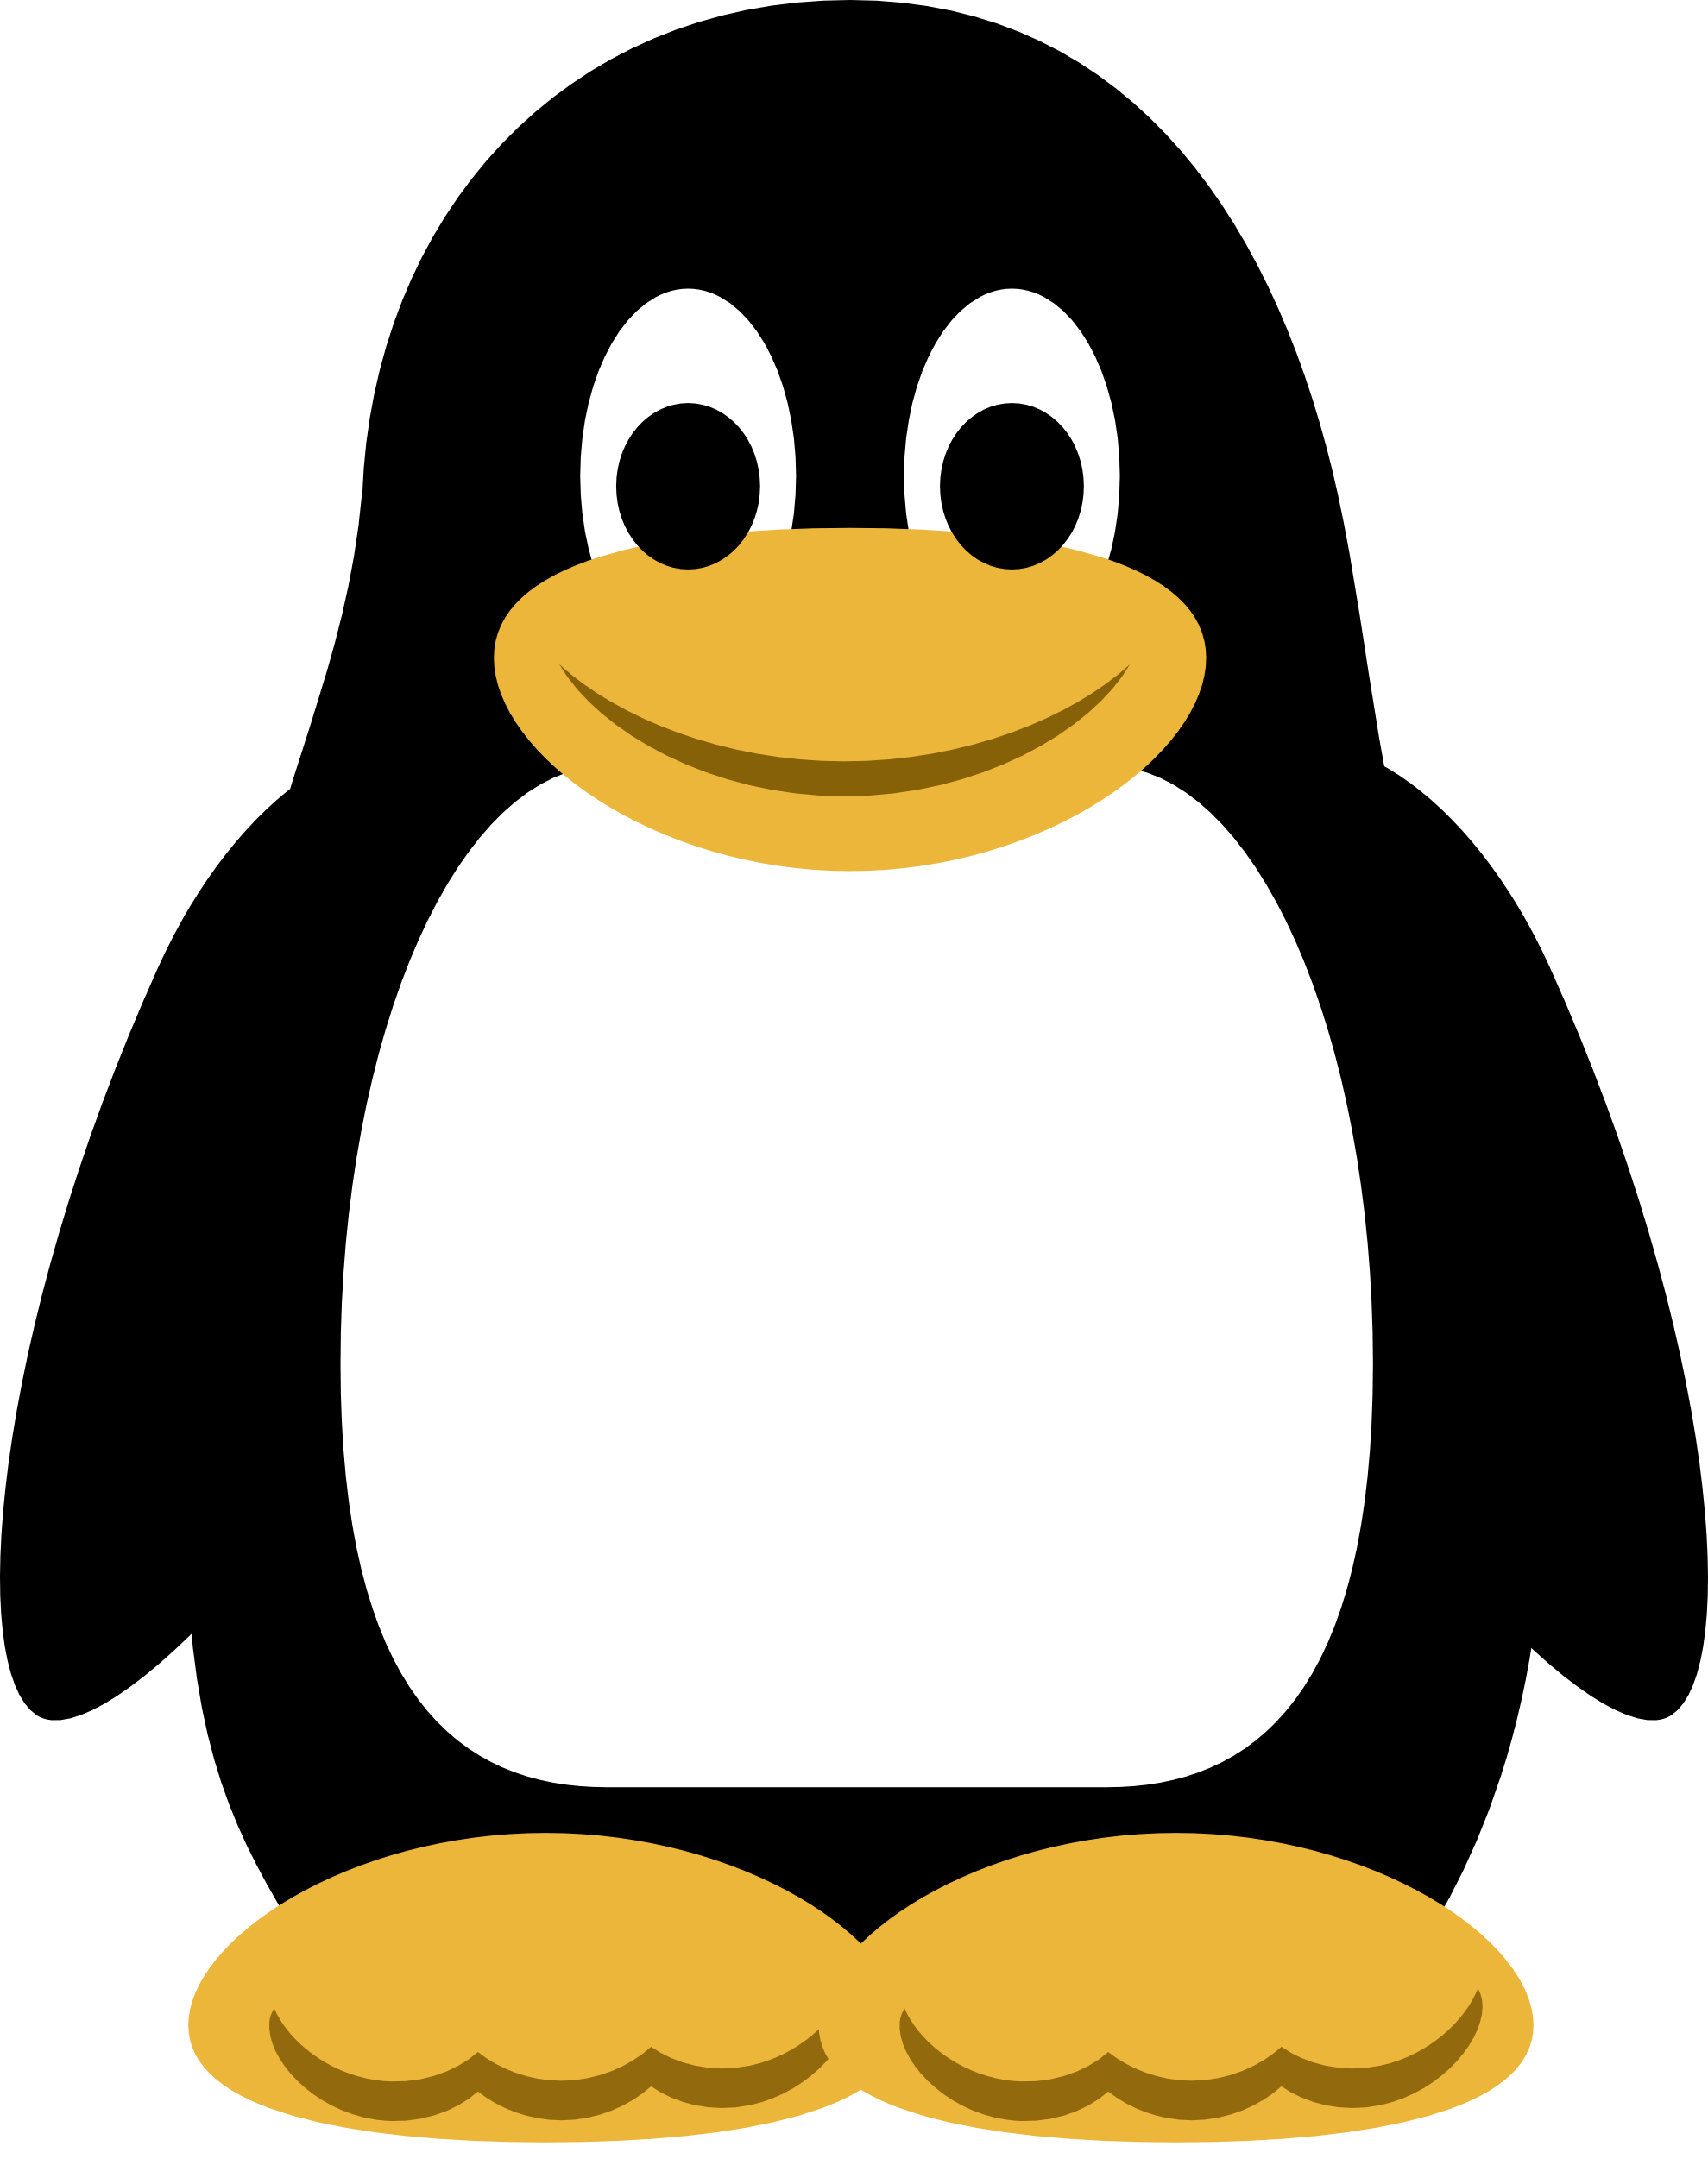 Tux The Penguin Linux - Free Clipart Images